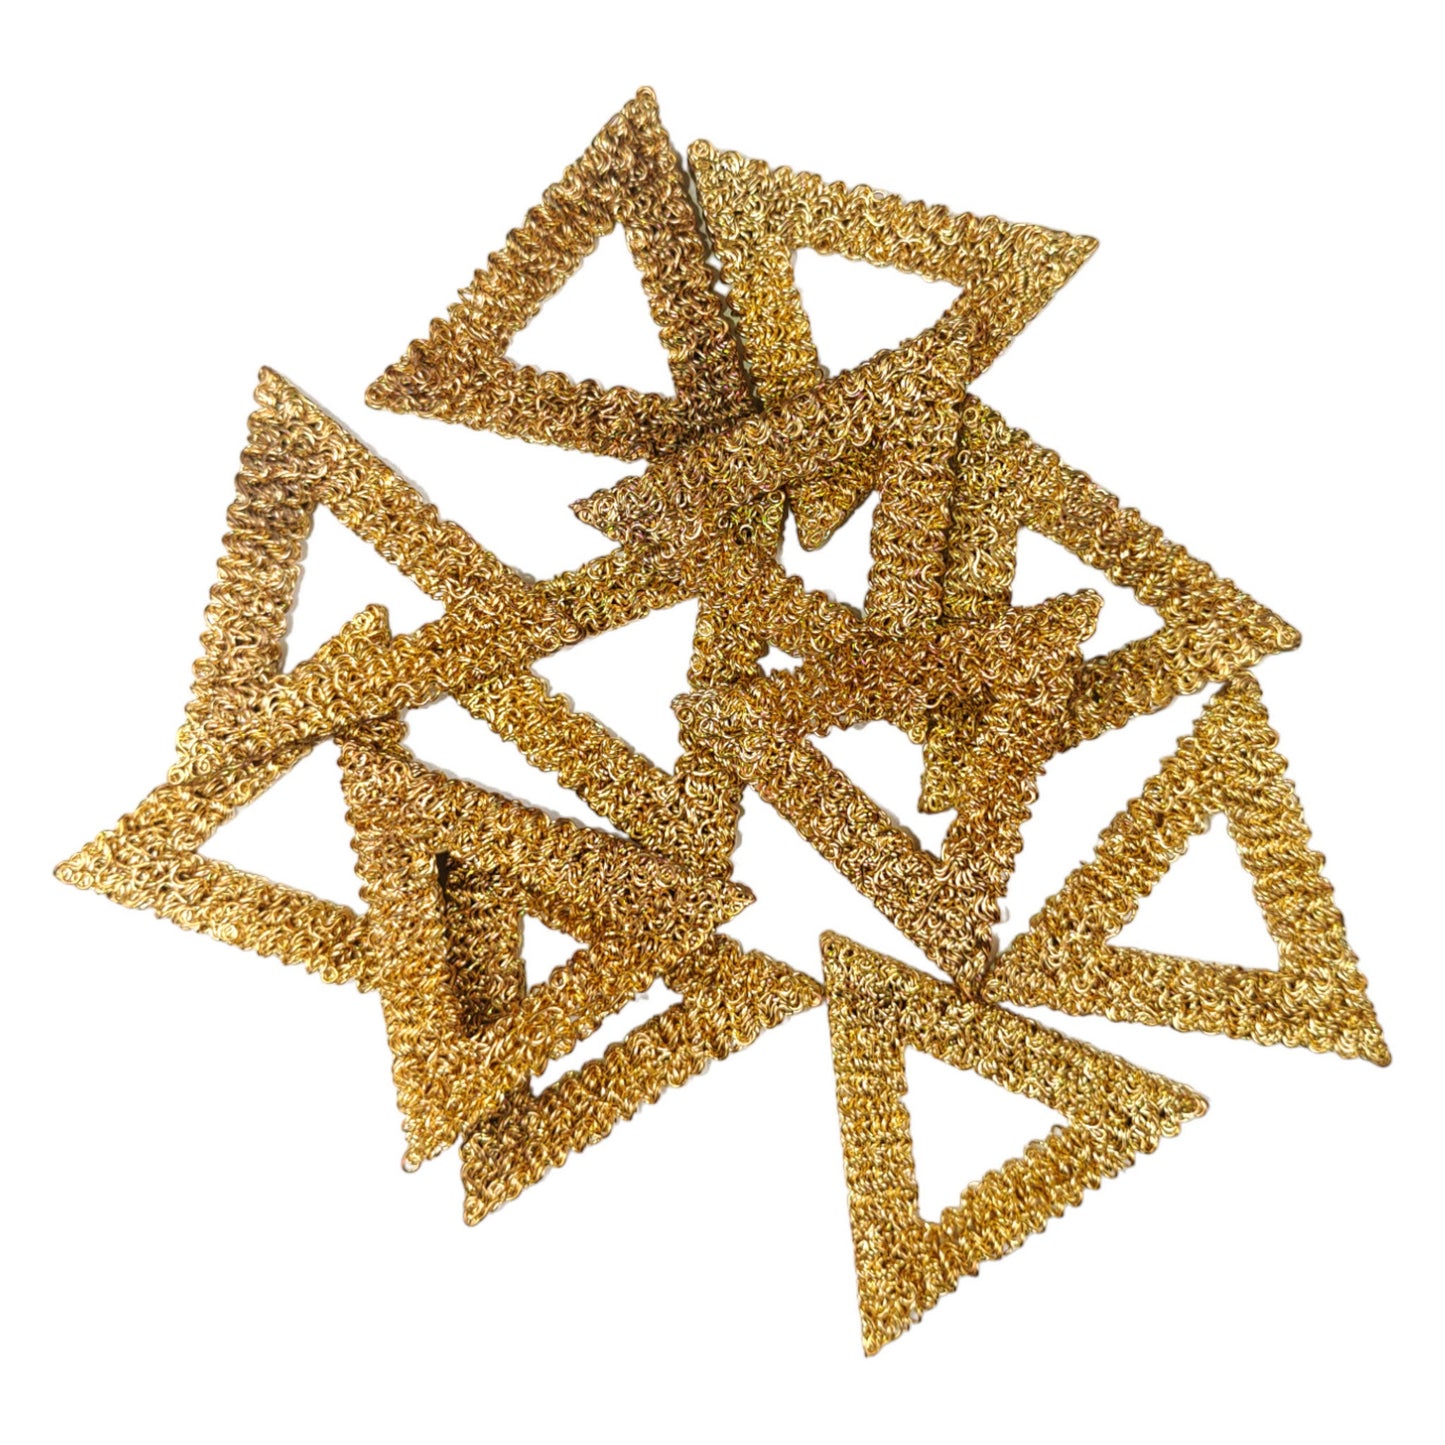 Designer Triangle Shape Metal Motif for Craft or Decor - 11447, Golden